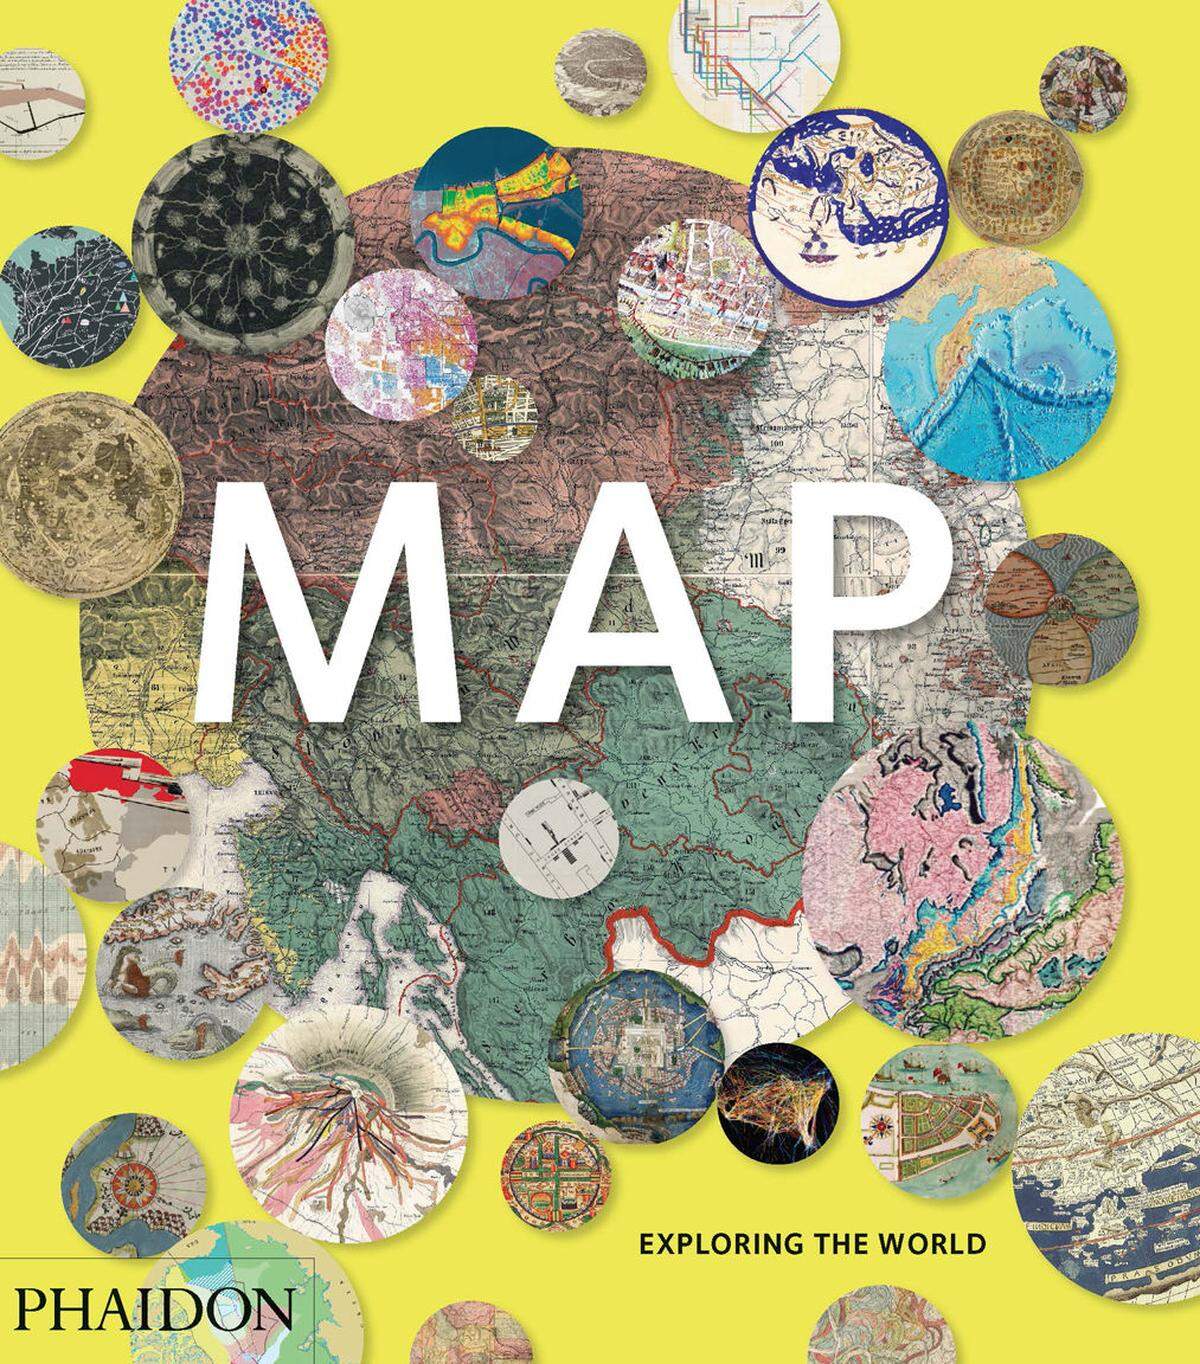 Der Band aus dem Phaidon-Verlag (47,50Euro) versammelt 300 Beispiele aus unterschiedlichsten Epochen und kulturellen Kontexten, die zeigen, wofür man Karten und Kartografie bewundern, nutzen, aber auch missbrauchen kann.